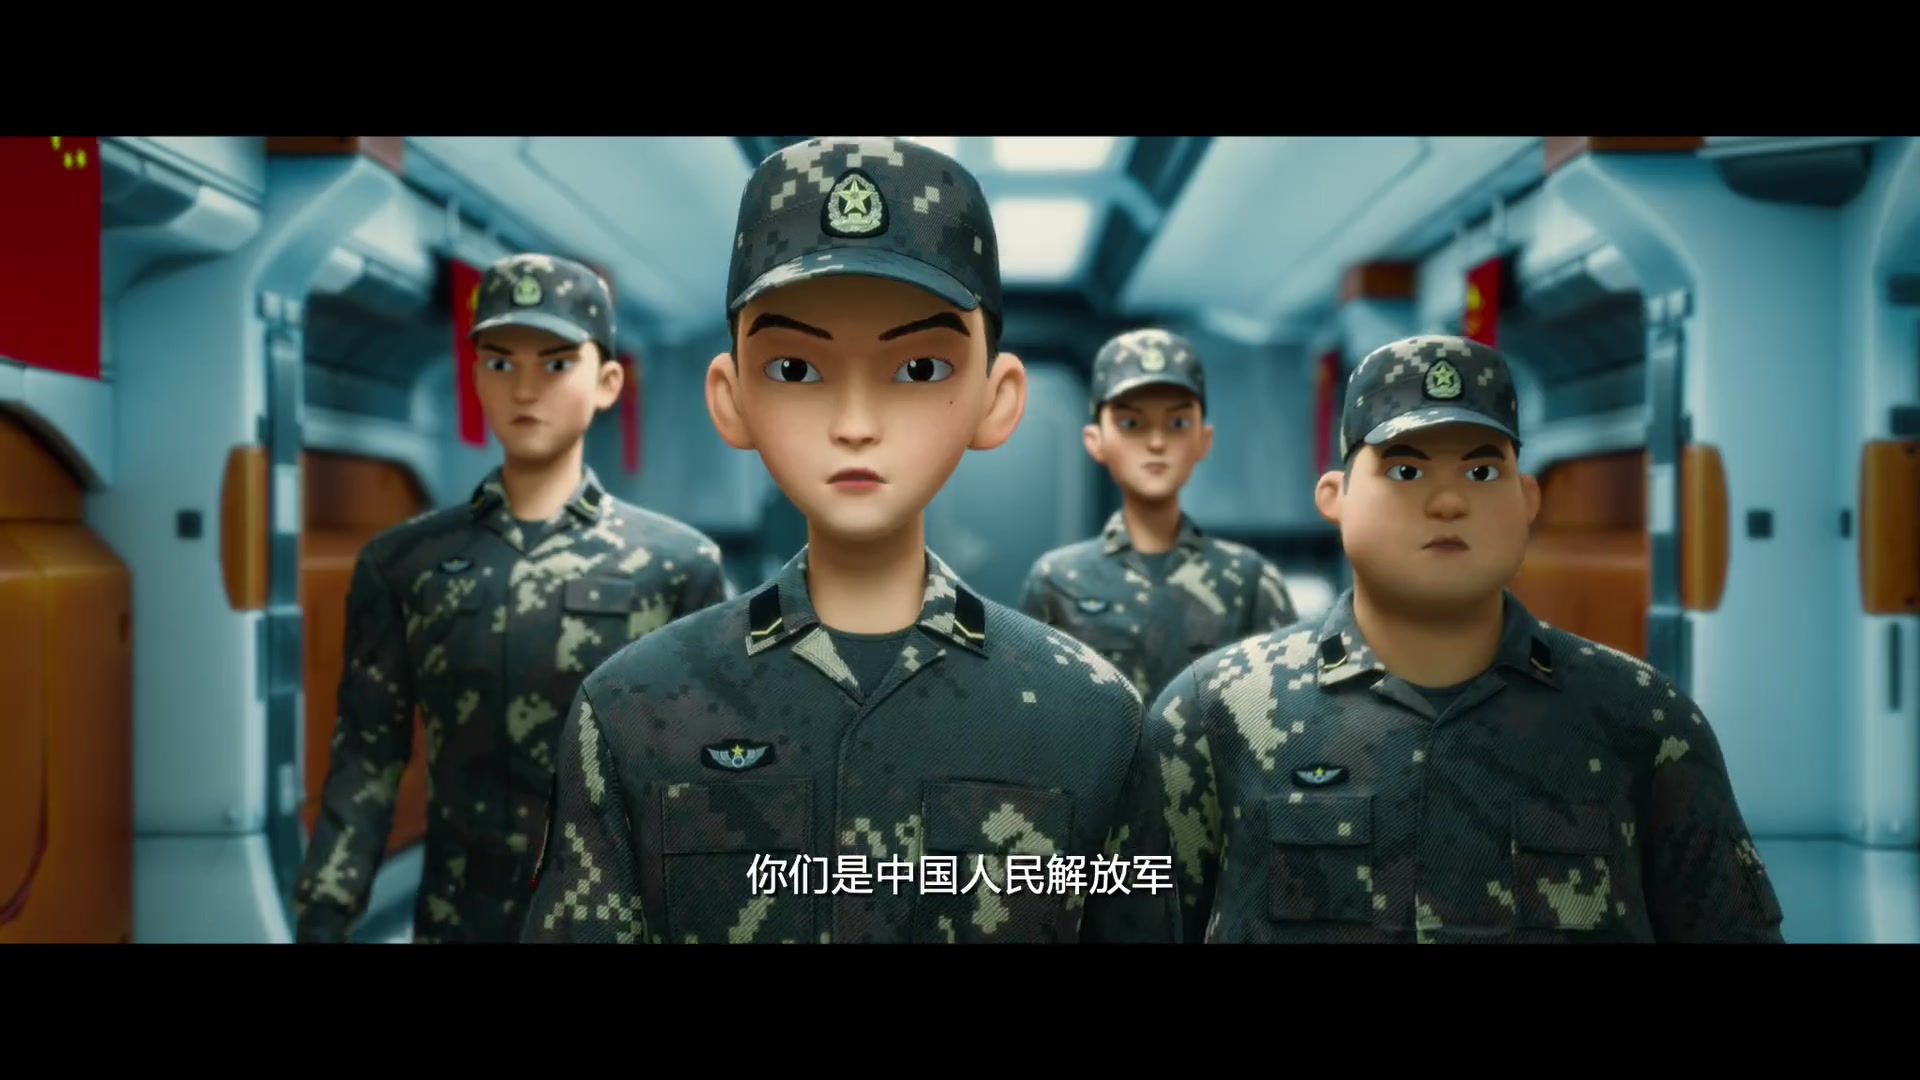 动画电影《士兵顺溜:兵王争锋》片花,2020年与观众见面